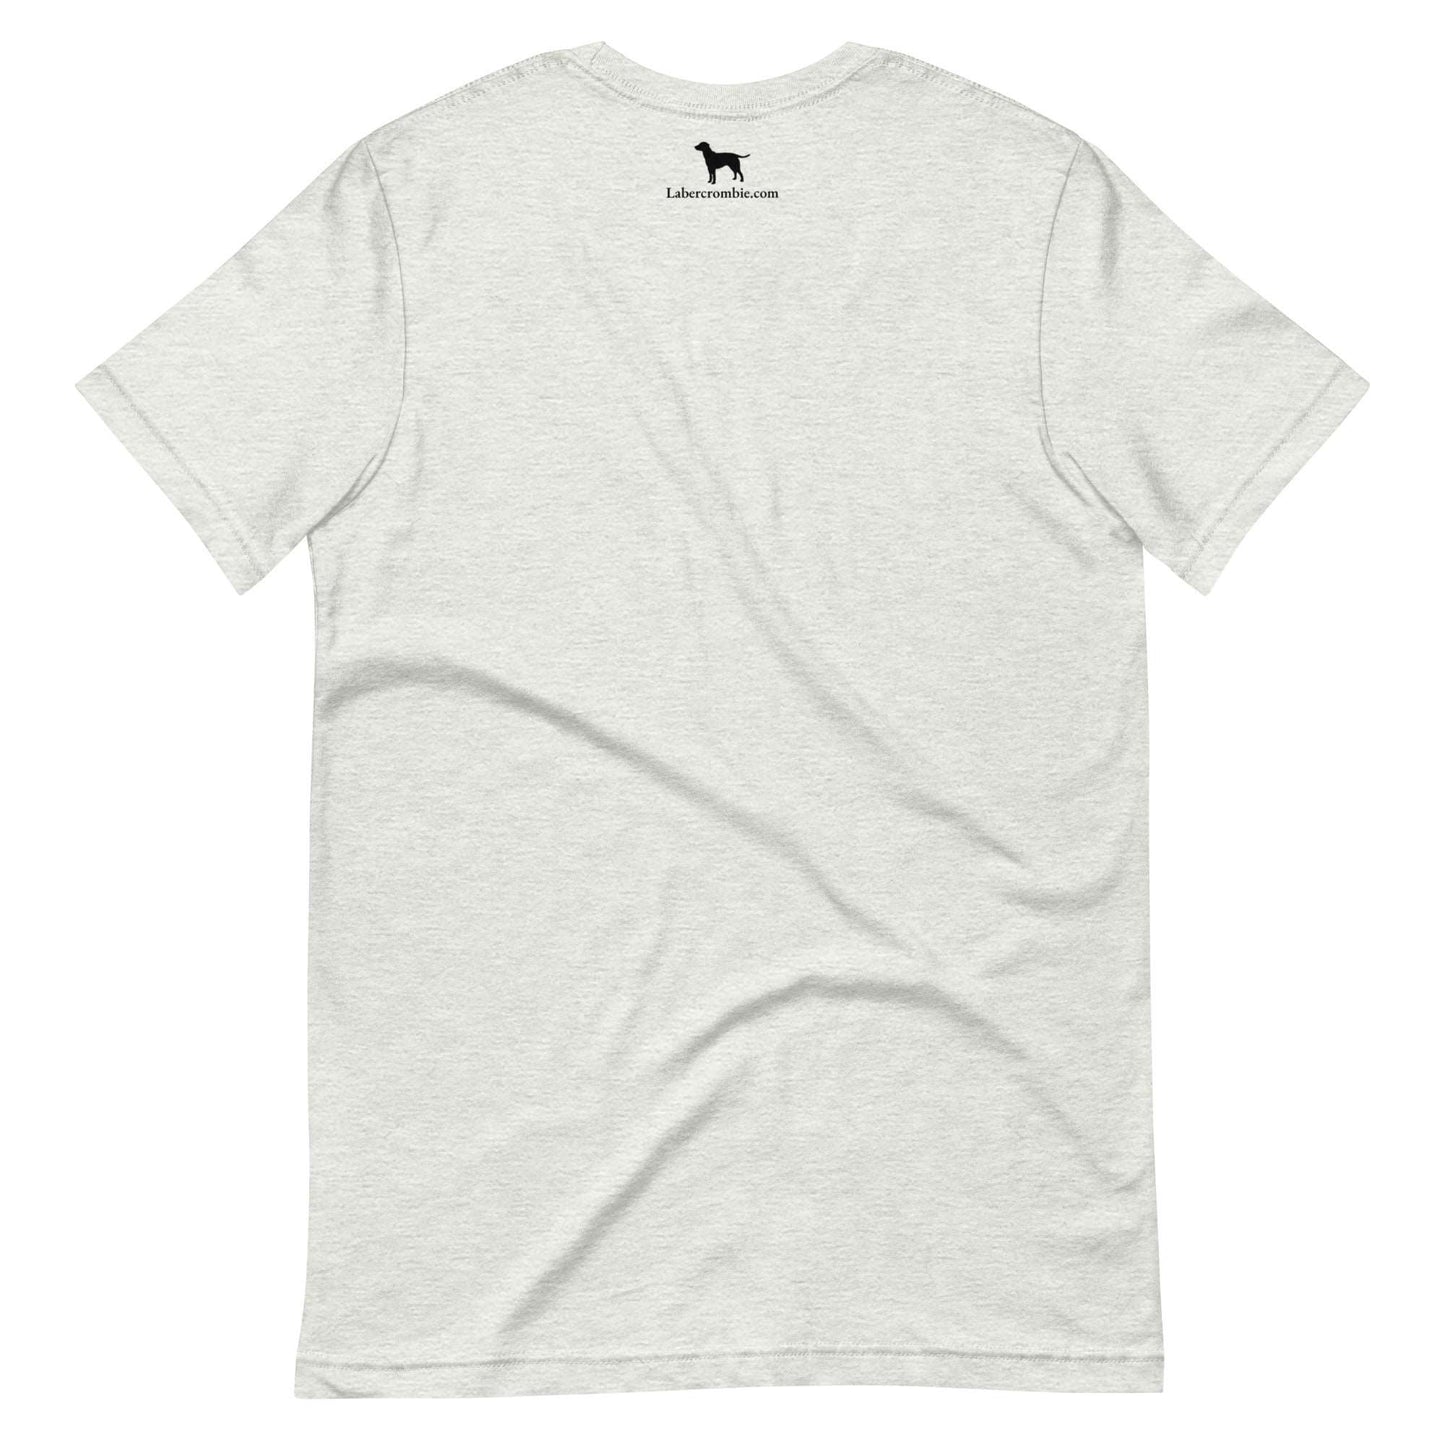 Barker King Unisex t-shirt